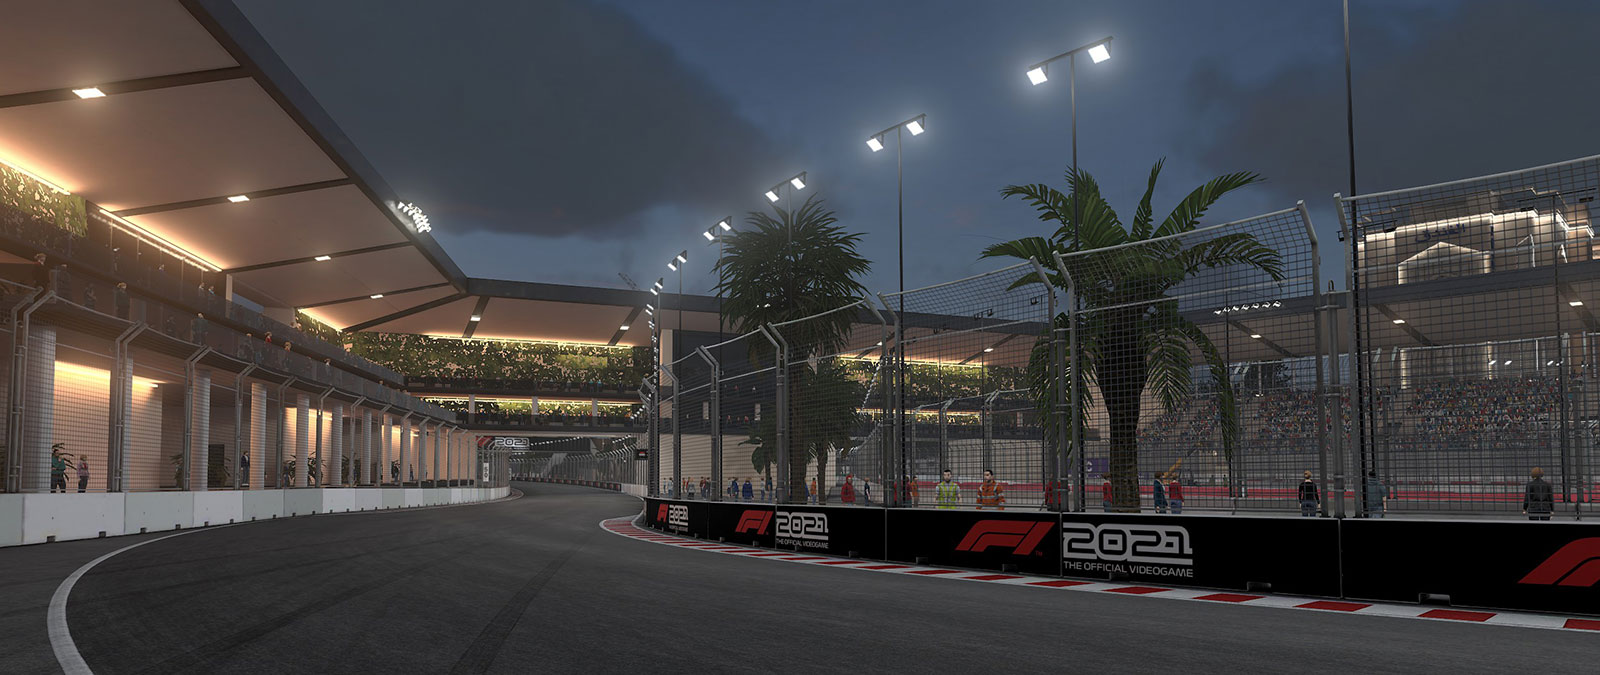 Juste après le coucher du soleil, un circuit de F1 est éclairé par les lampadaires, sous le regard des fans depuis les tribunes.